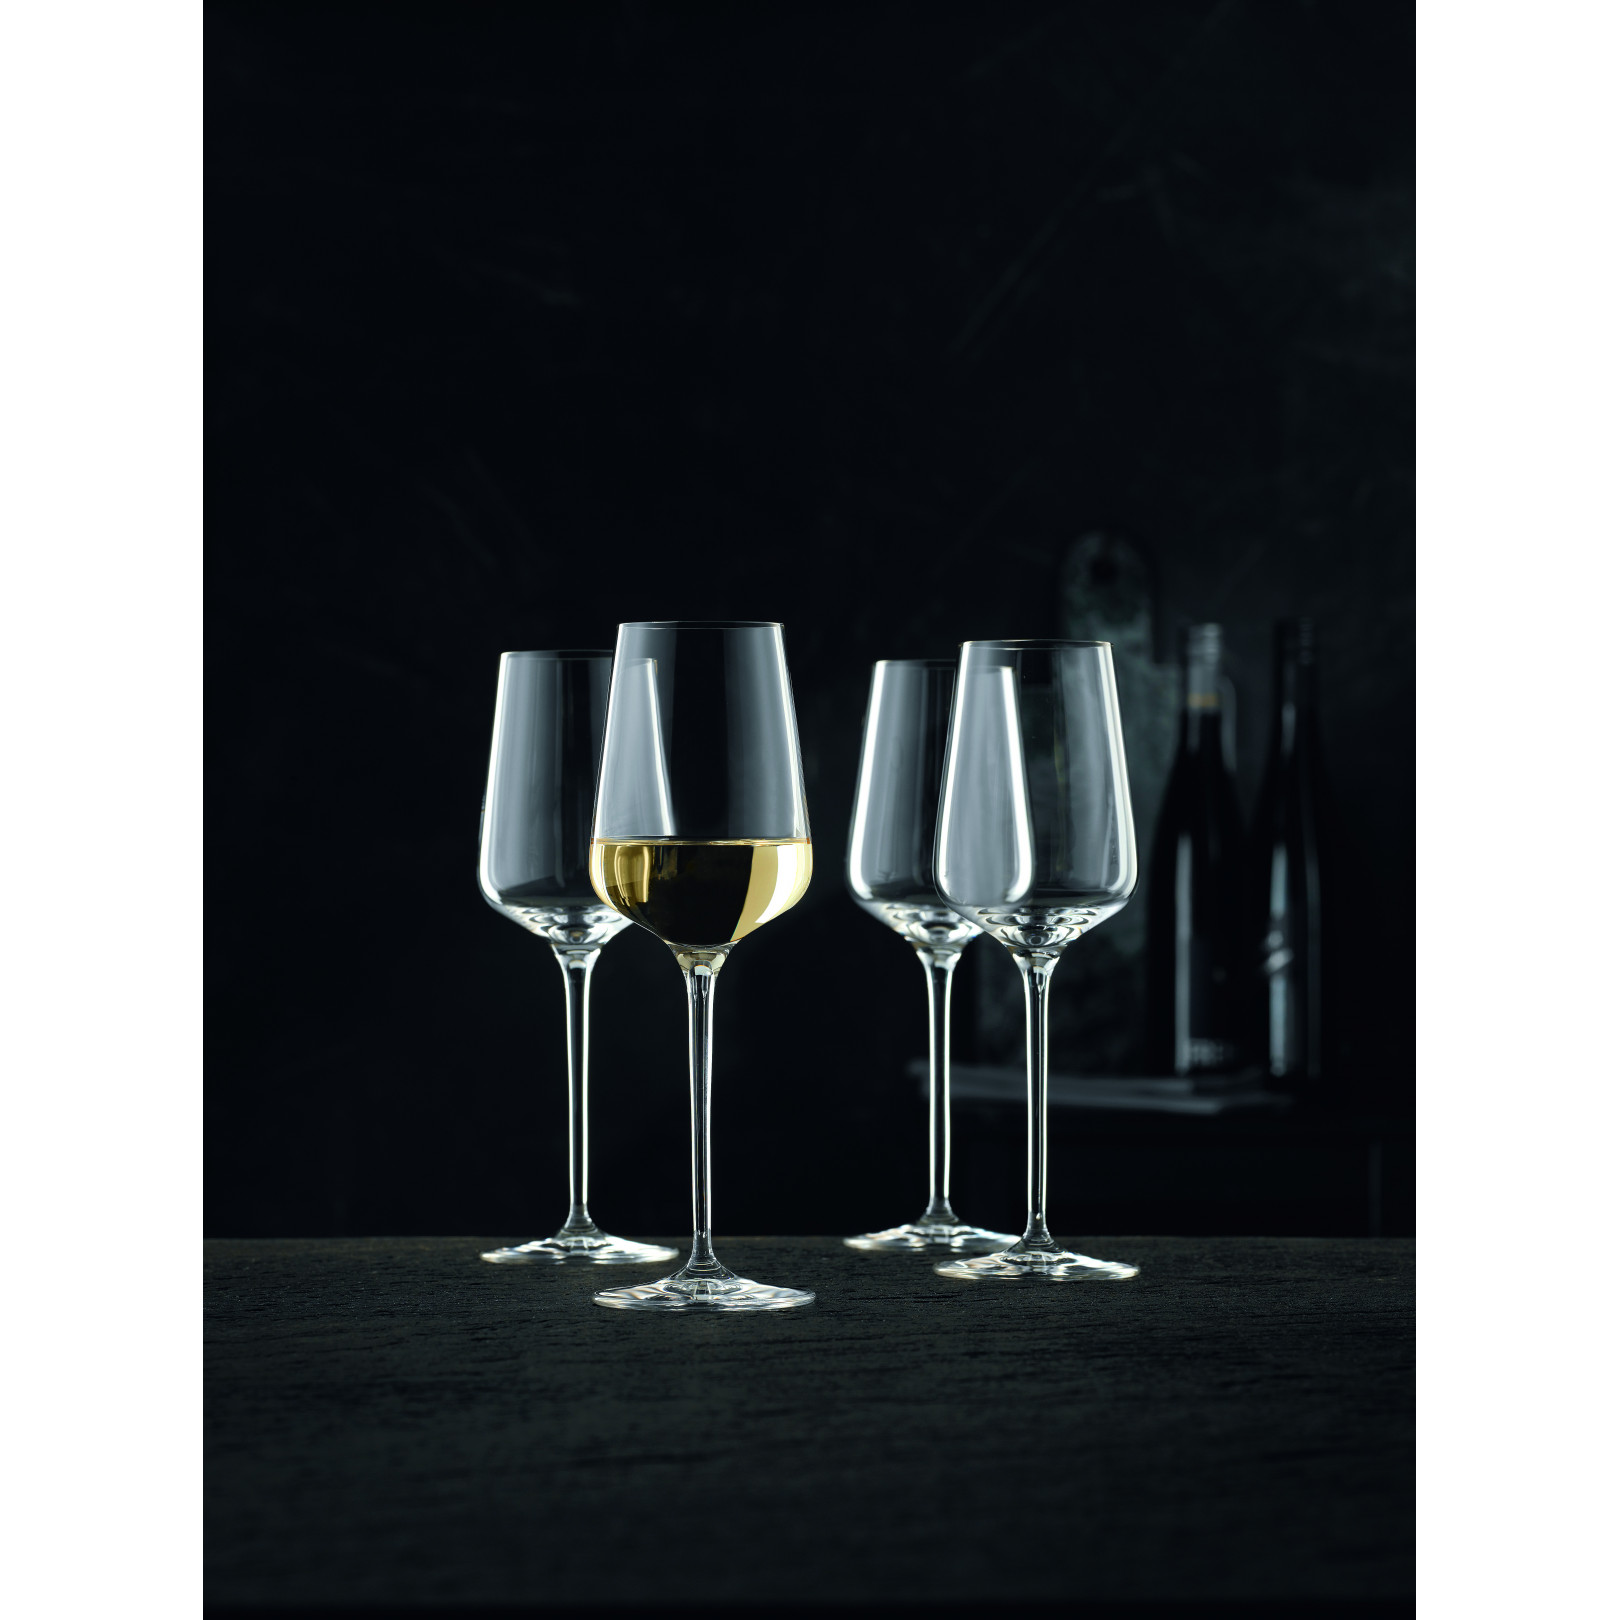 Vinova - zestaw 4 kieliszków do wina białego